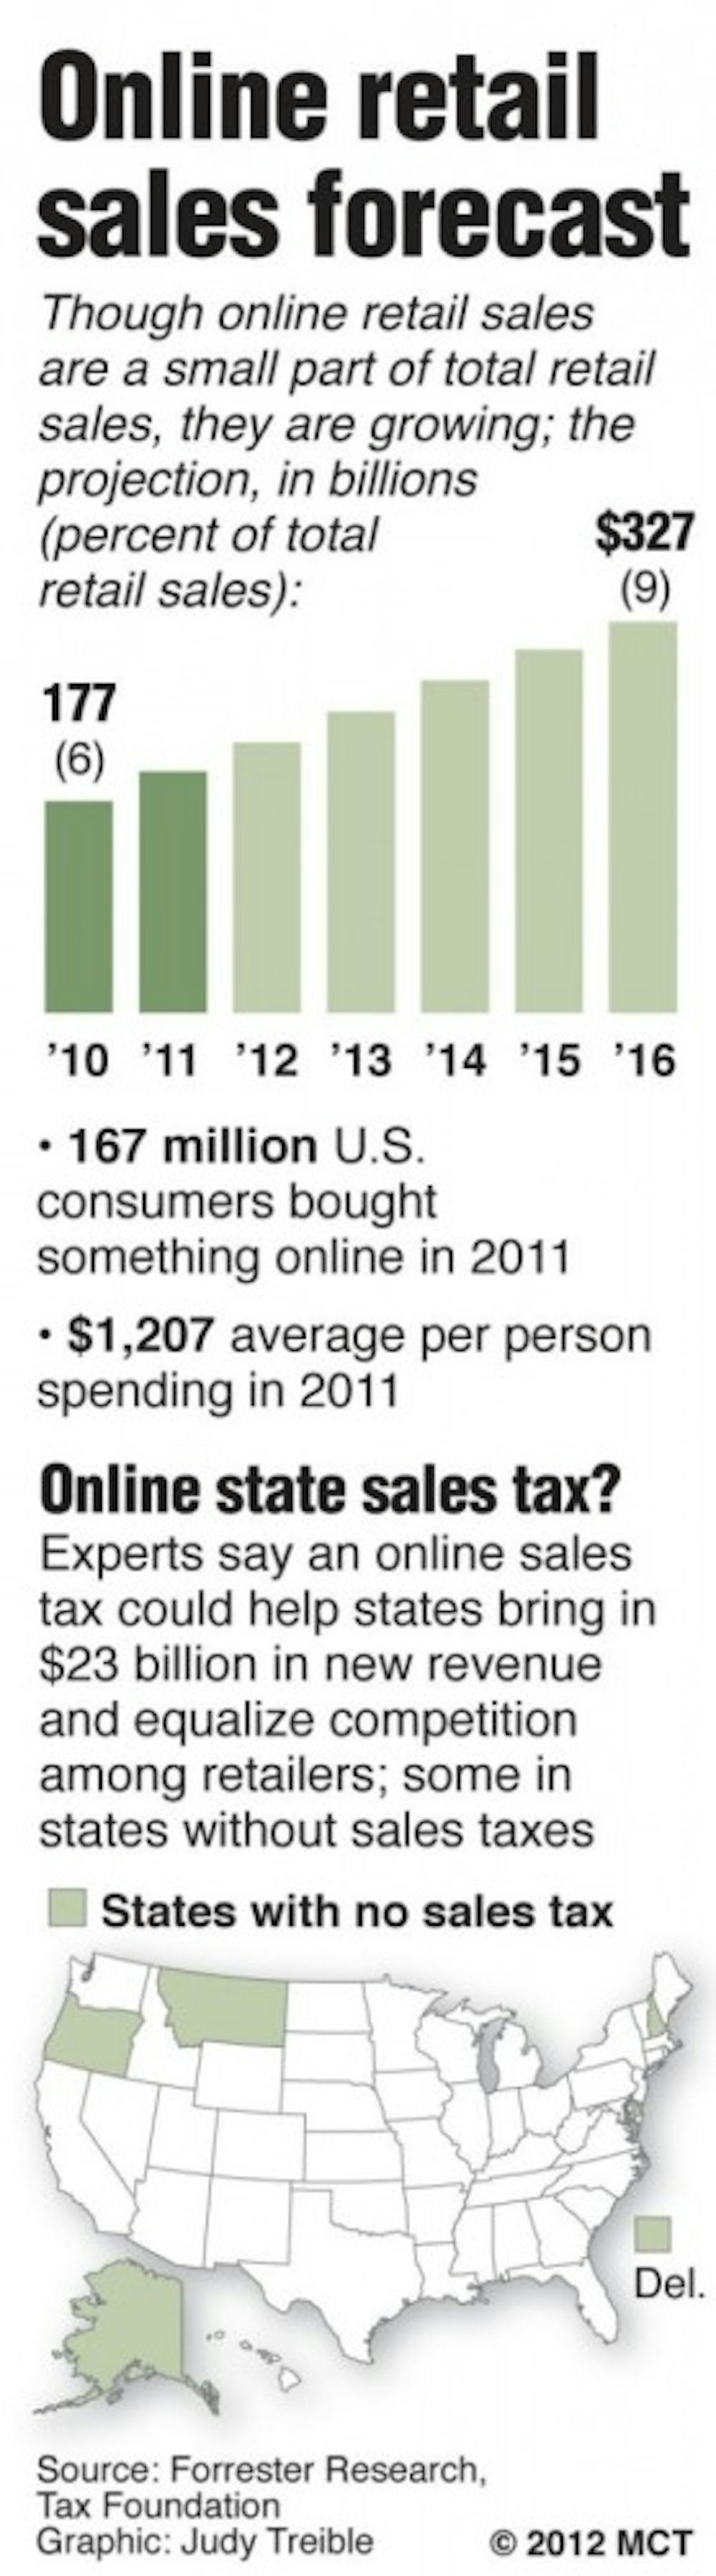 20121219-internet-tax